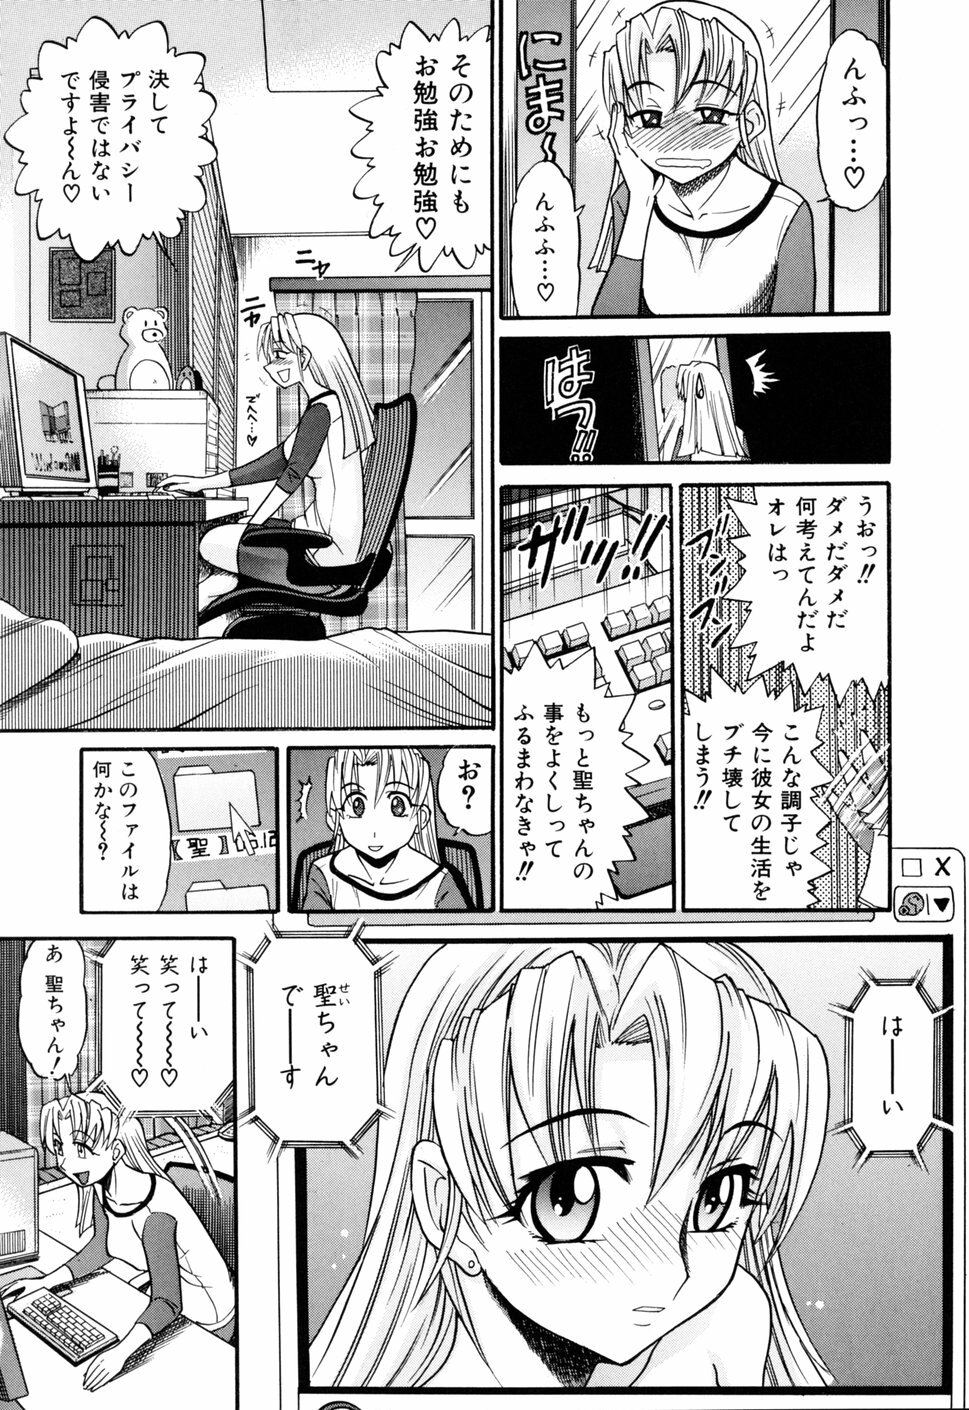 [DISTANCE] Ochiru Tenshi Vol. 1 page 20 full